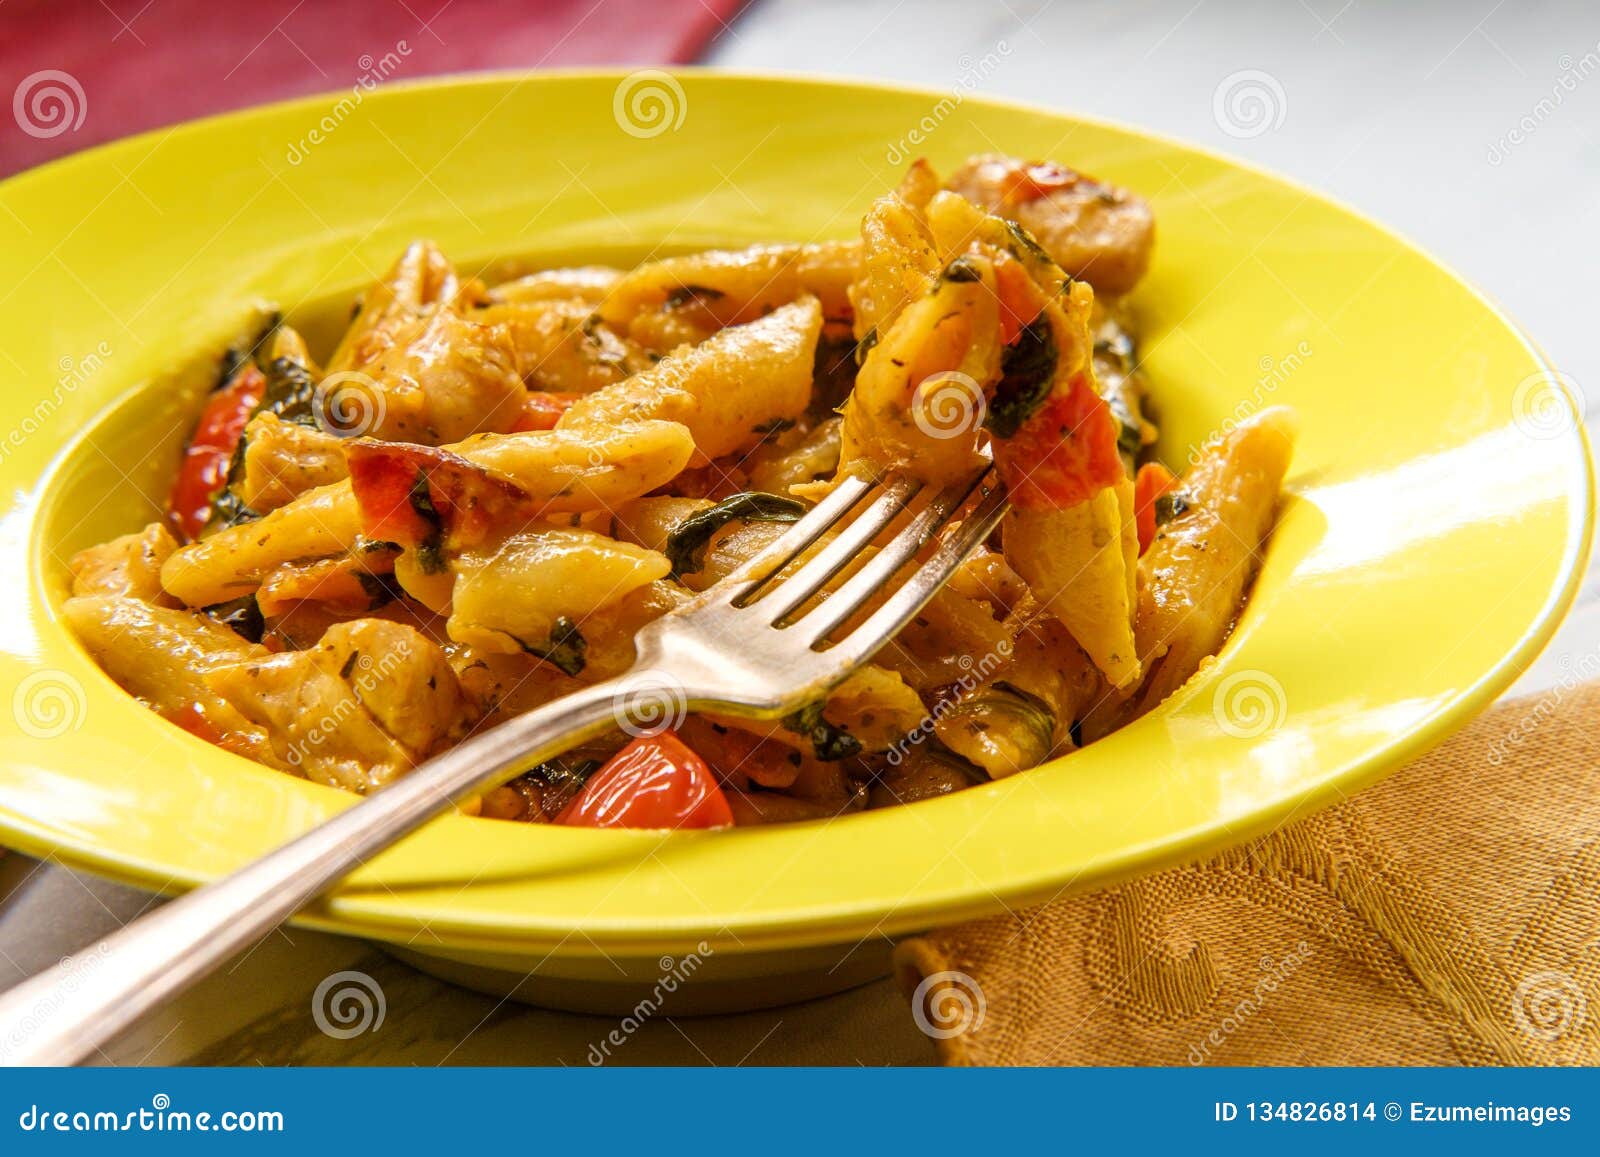 creamy tuscan pasta chicken